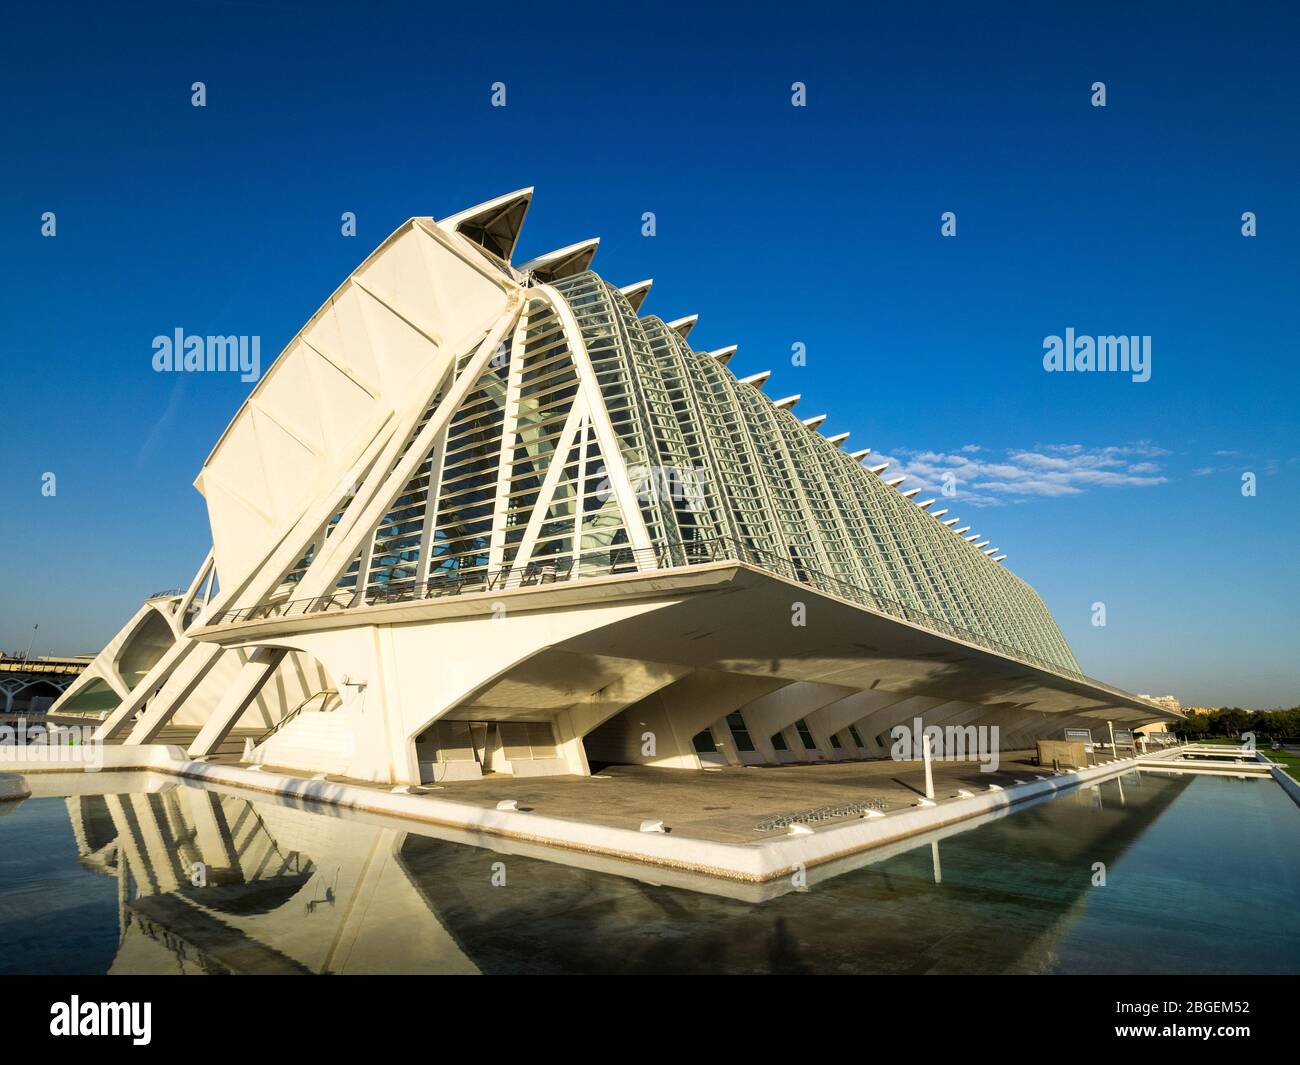 Architecture de Valence - Musée scientifique Príncipe Felipe dans la Ville des Arts et des Sciences de Valence, architecte Santiago Calatrava (ouvert 2000) Banque D'Images